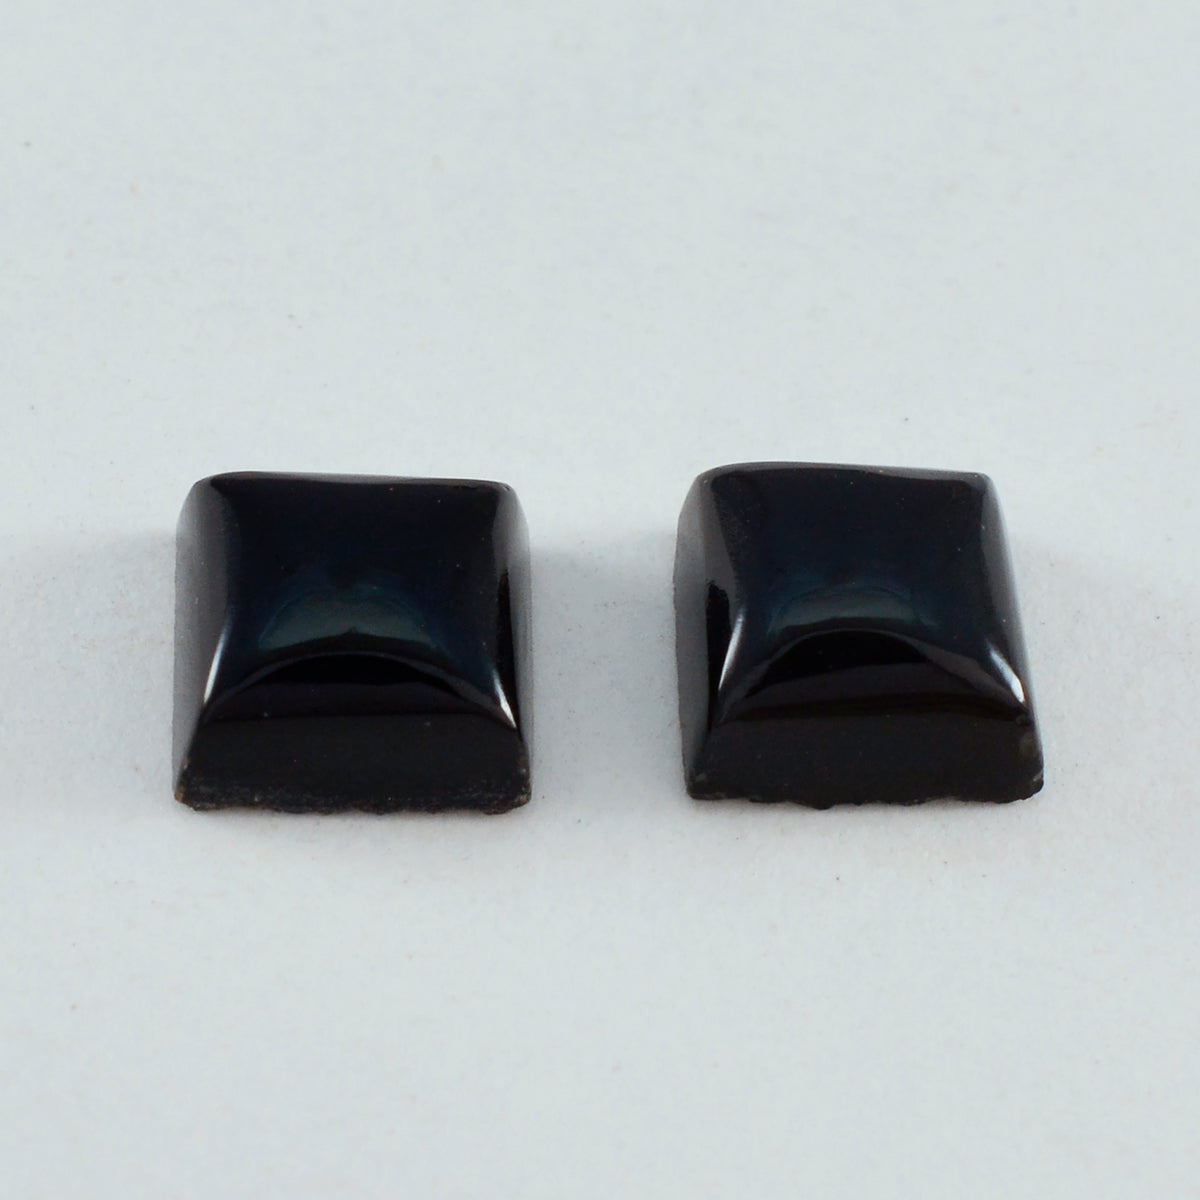 Riyogems 1 pieza cabujón de ónix negro 14x14 mm forma cuadrada piedra preciosa de calidad impresionante